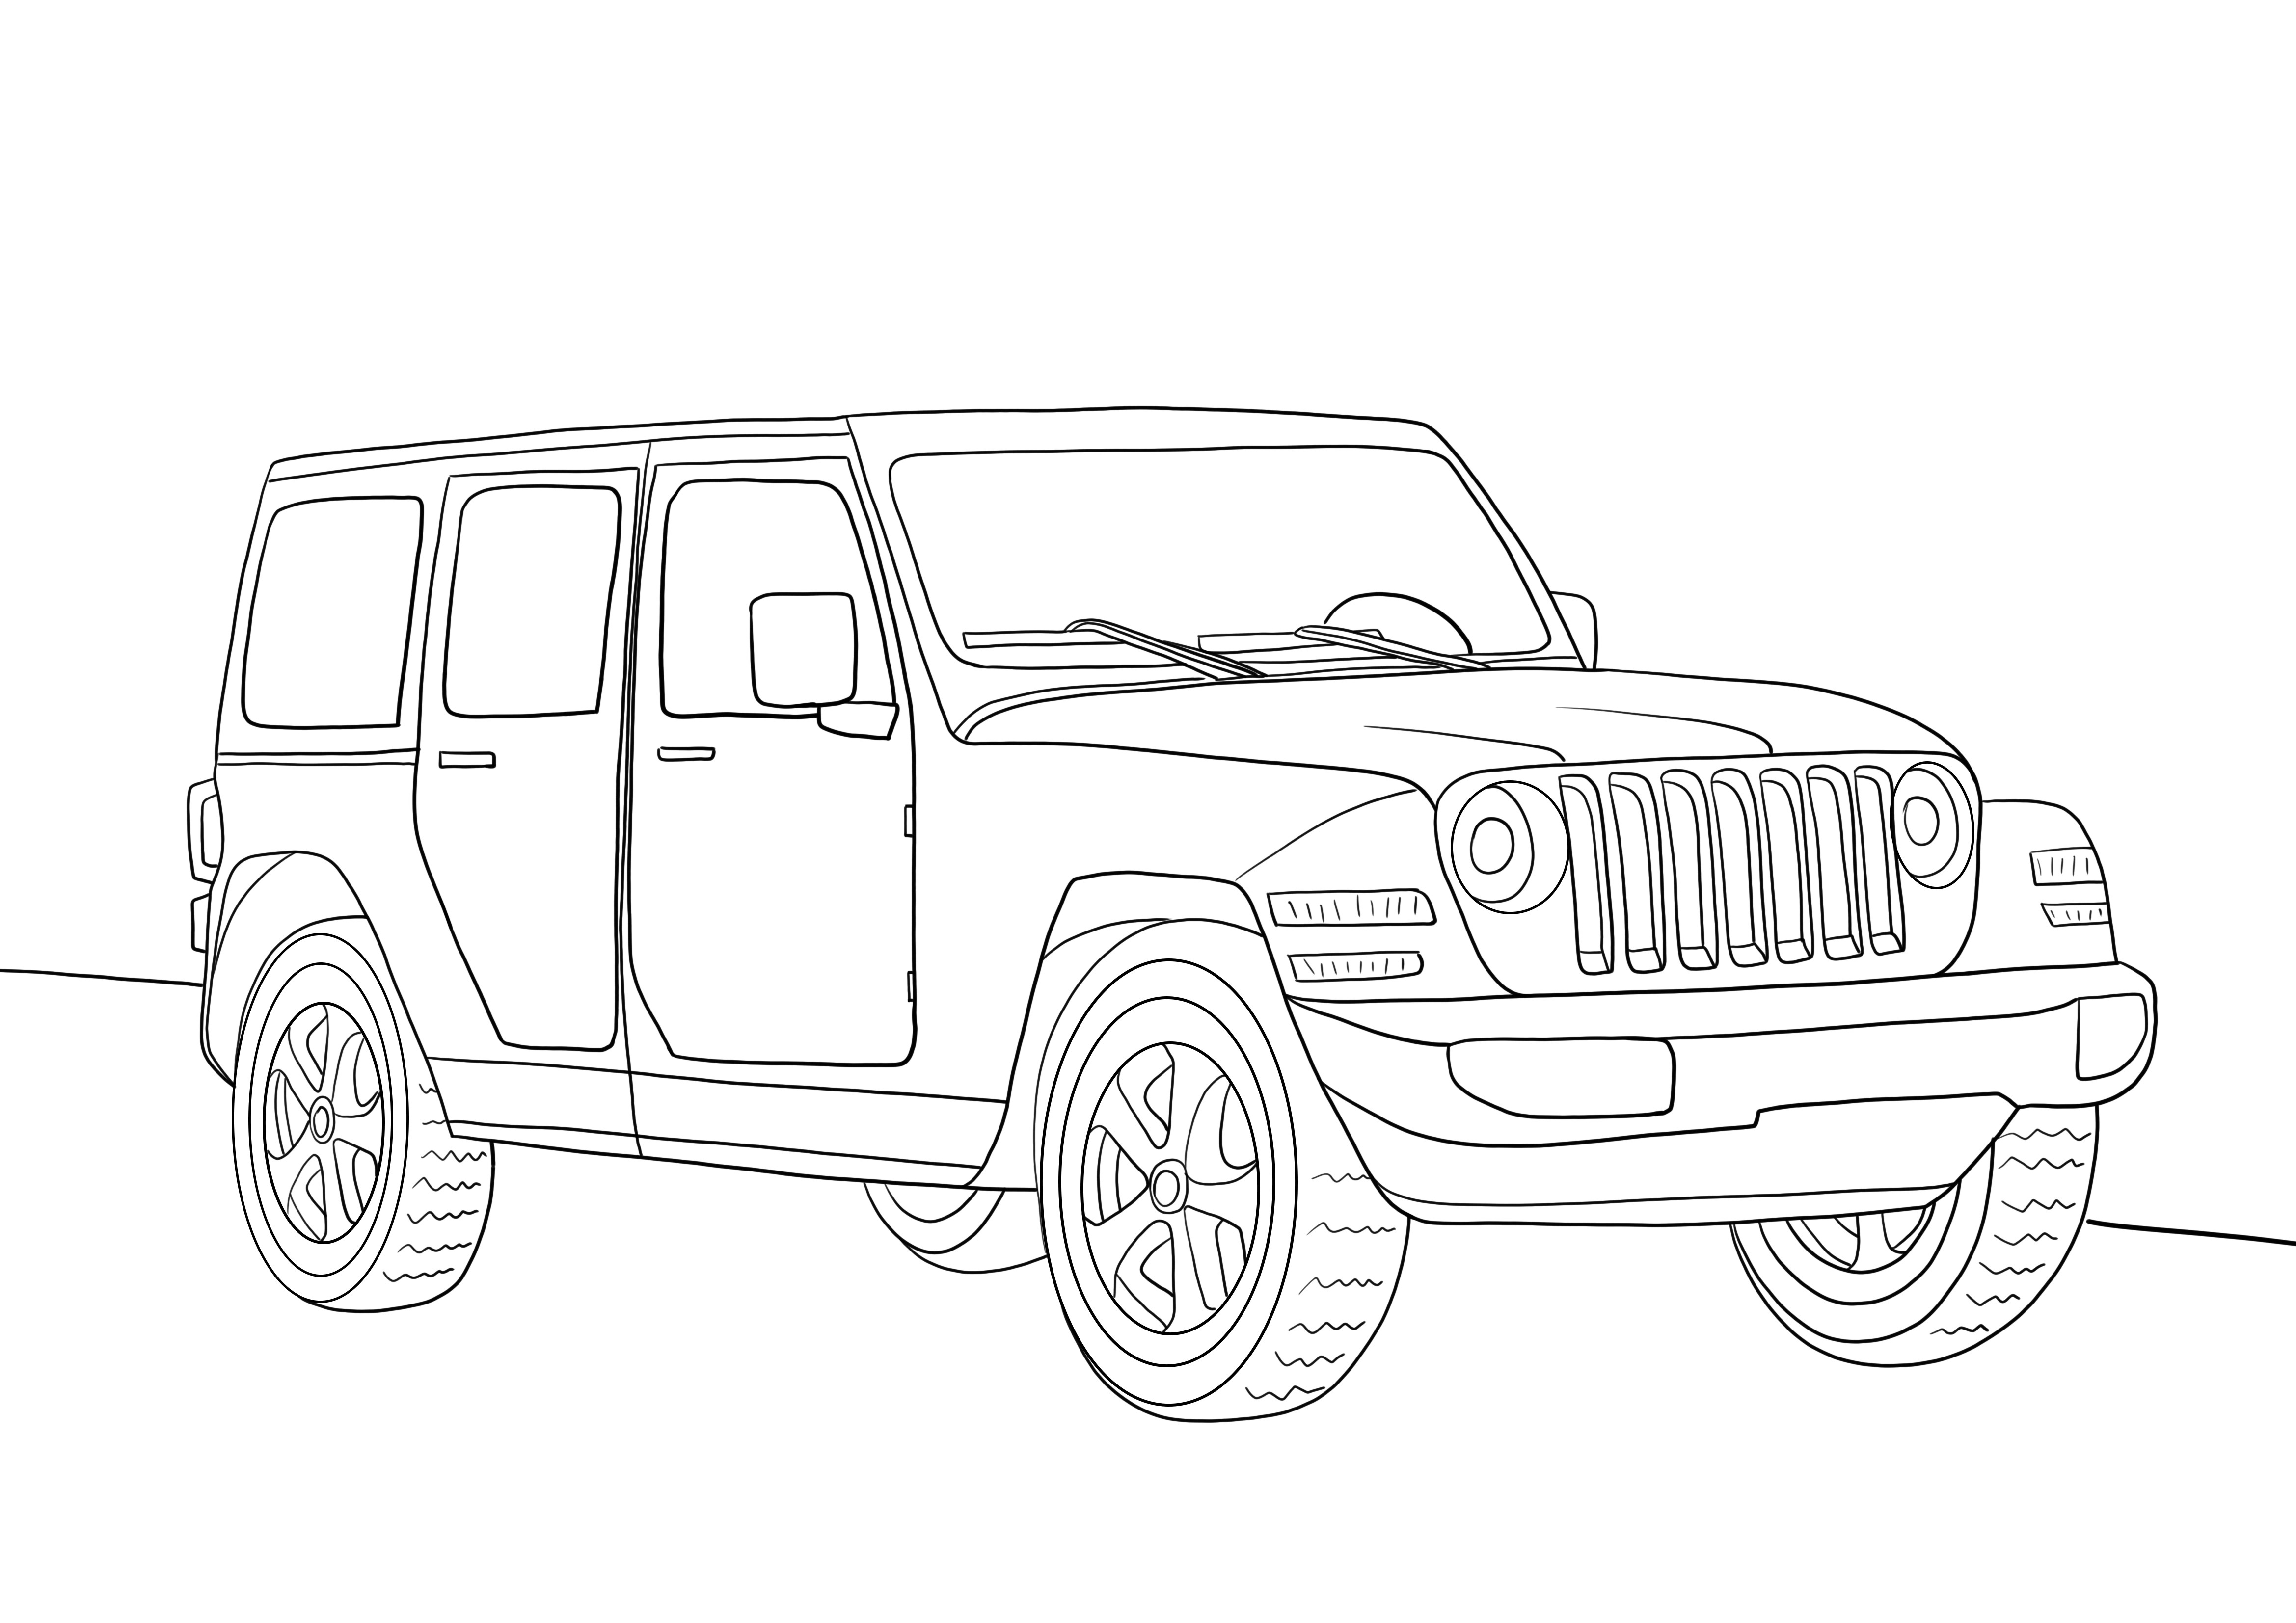 Jeep wrangler väritys ja ilmainen latausarkki